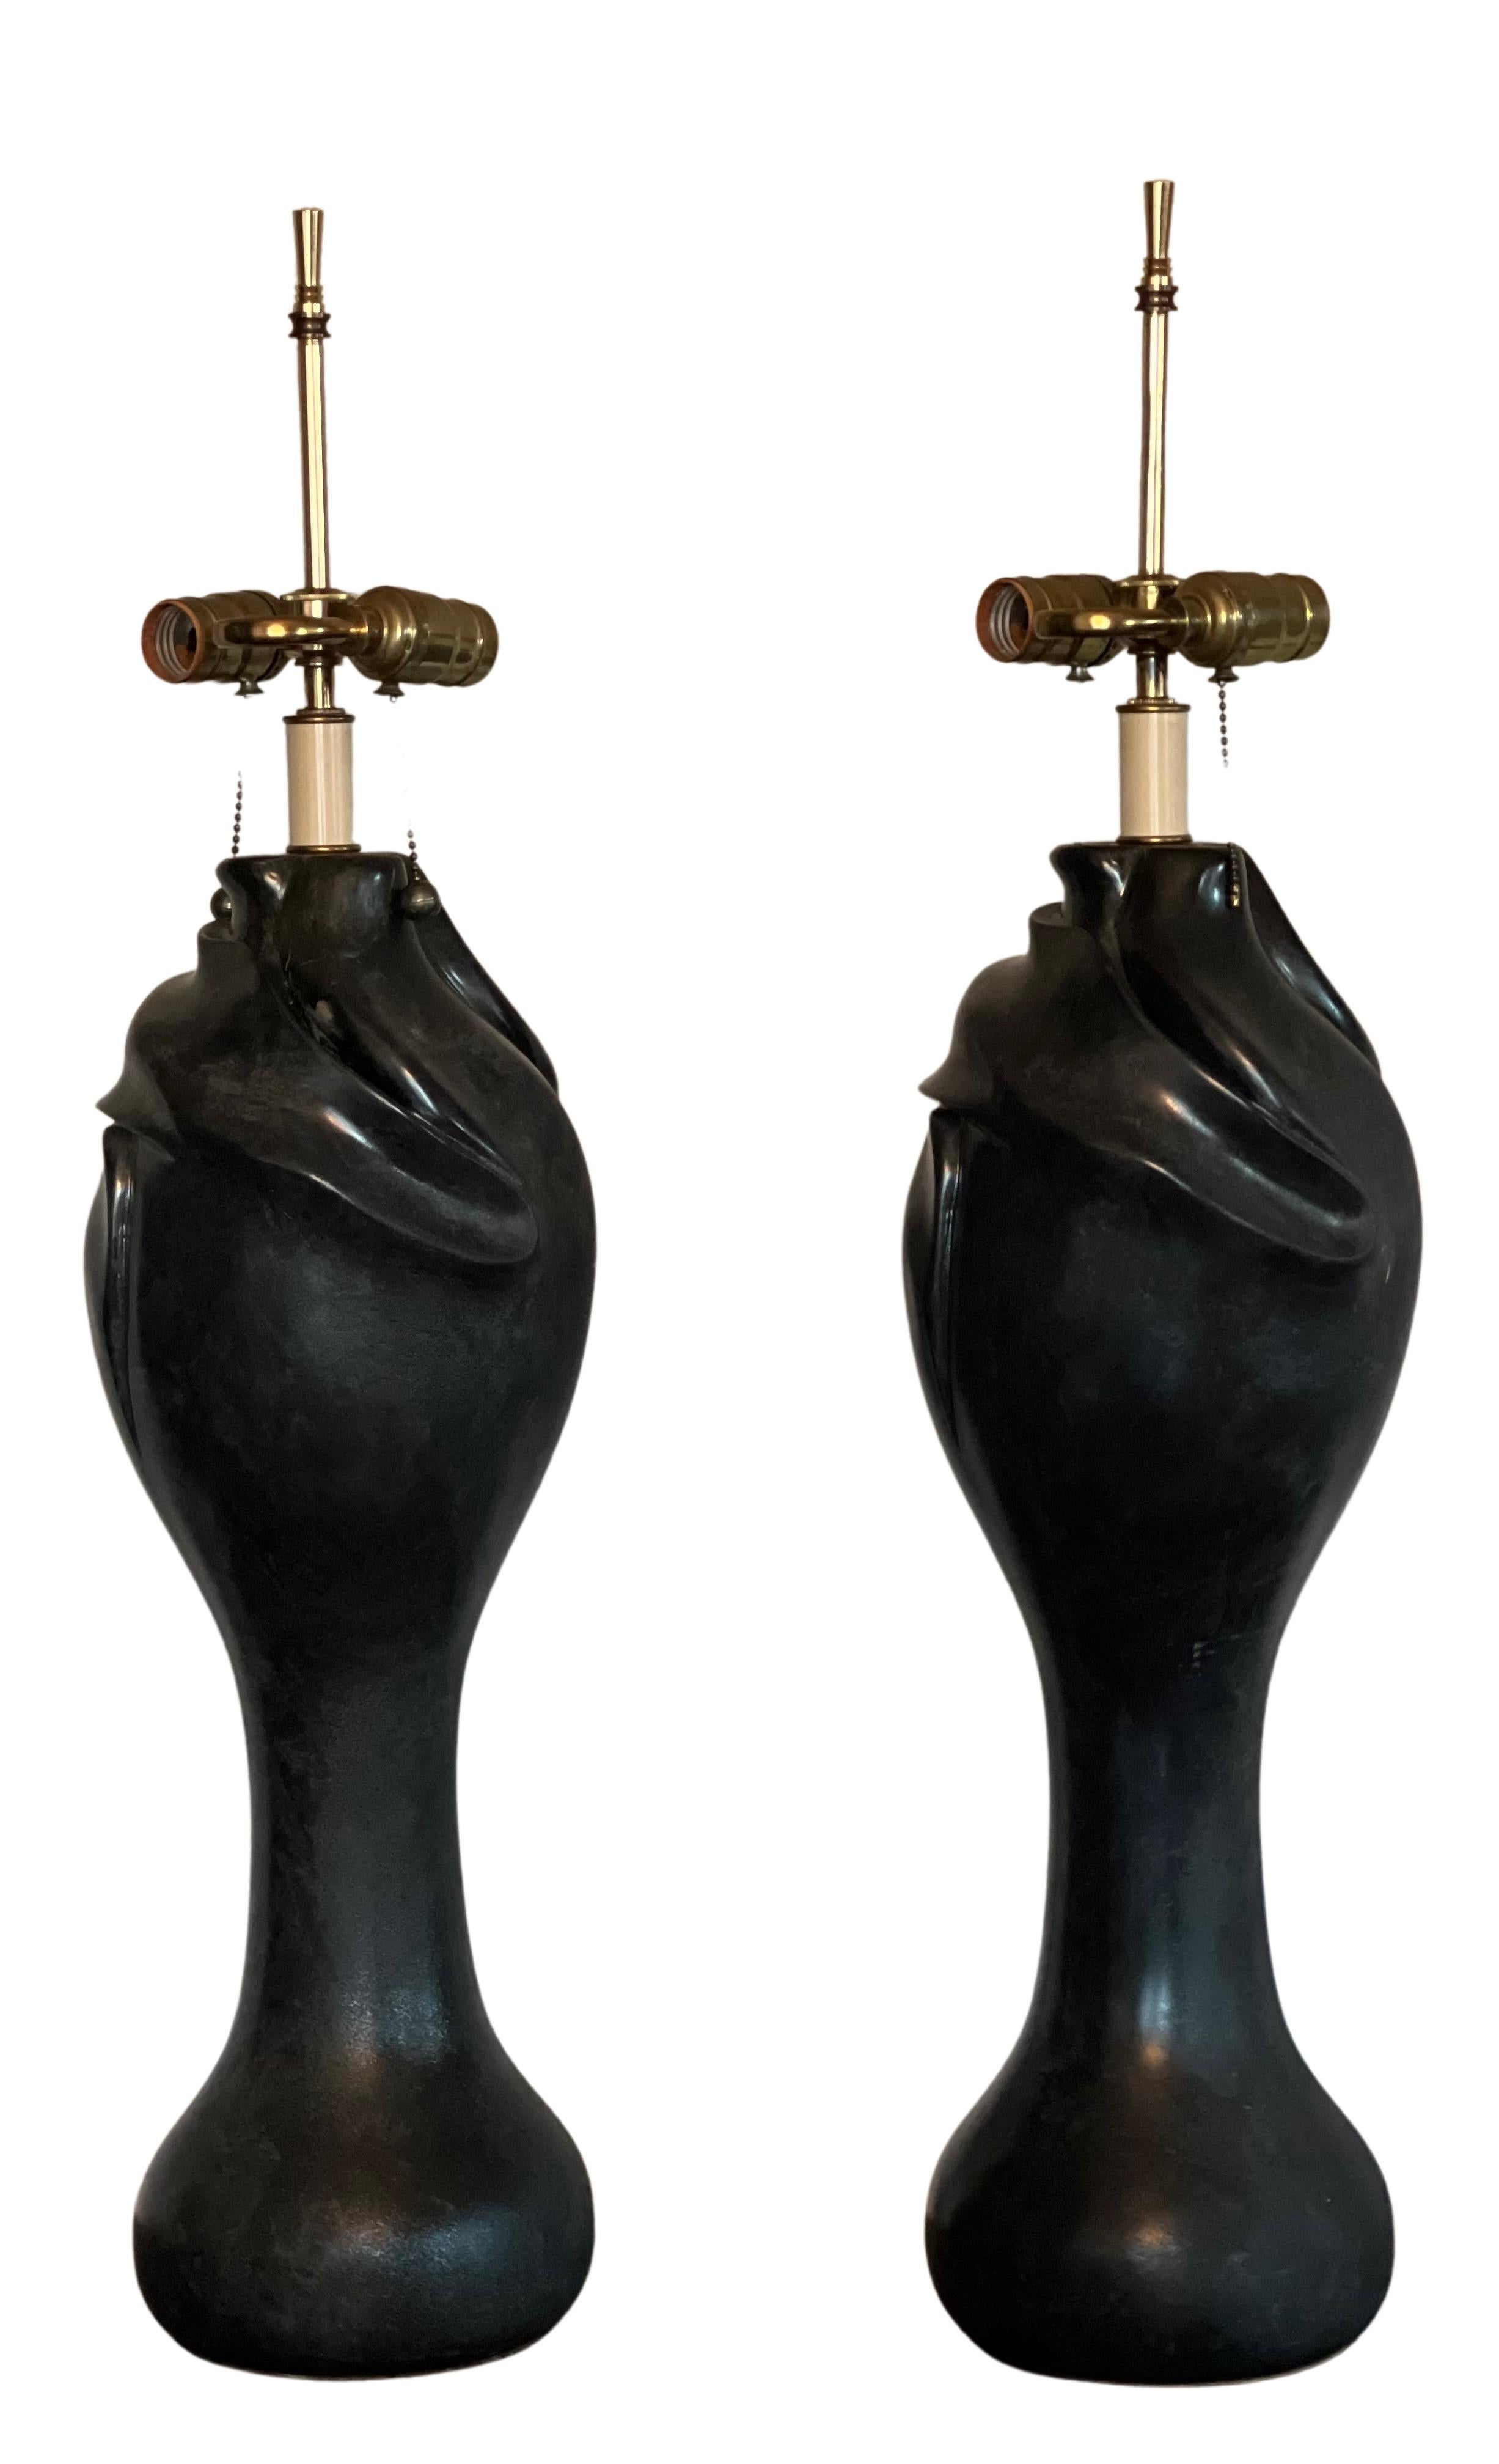 Elégantes lampes de table en fausse pierre noire de forme libre de style Jugenstil du milieu du siècle.

La paire a une forme organique fluide et feuillue que l'on retrouve dans de nombreuses pièces originales de l'Art nouveau et du Jugenstil de